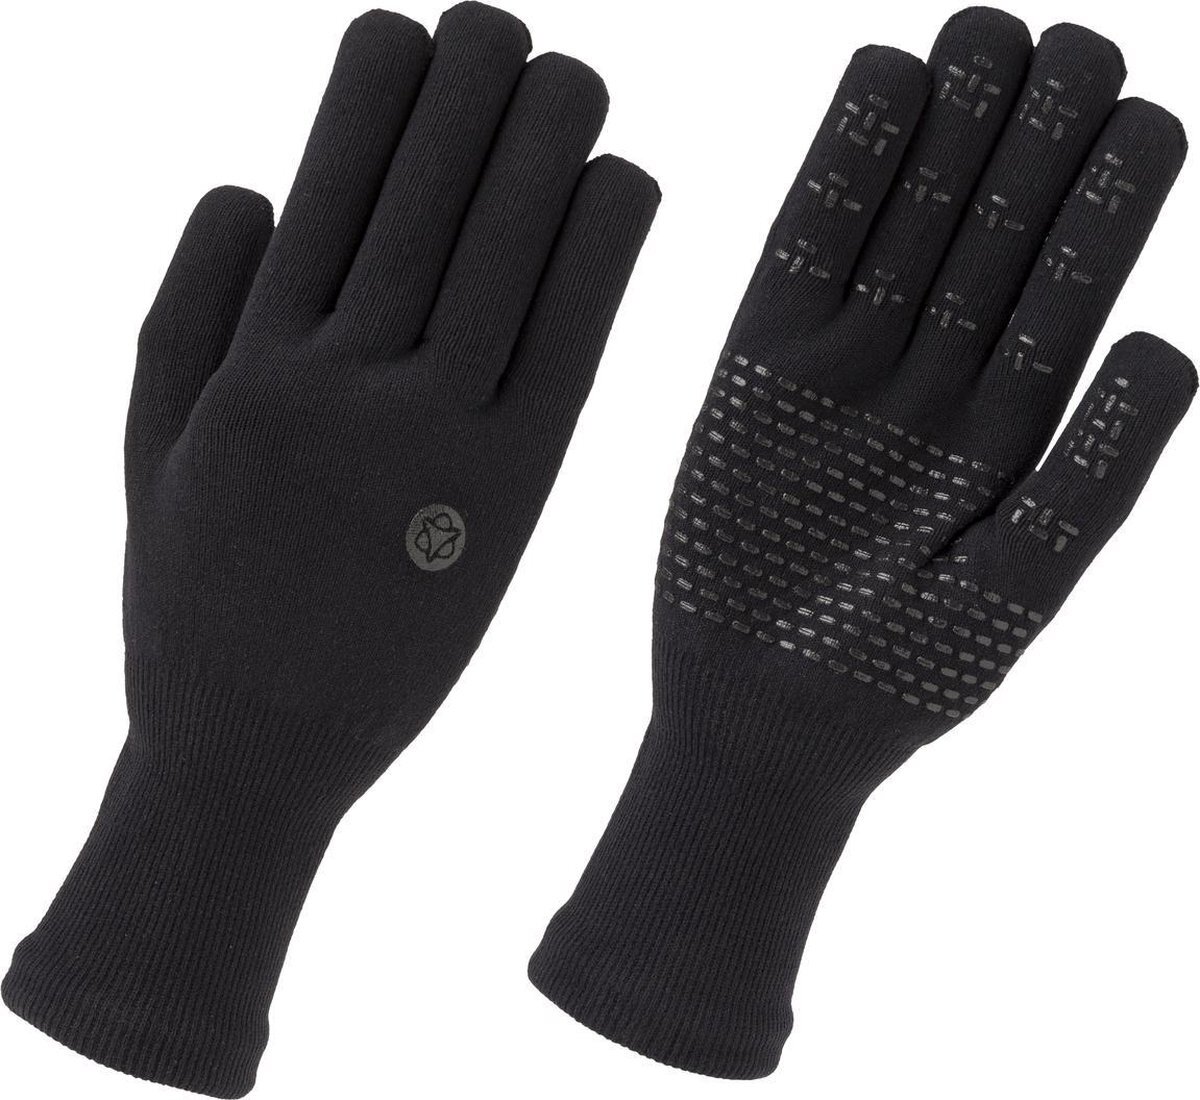 AGU Merino Knit Handschoenen Lange Vingers Essential Waterproof - Zwart - L